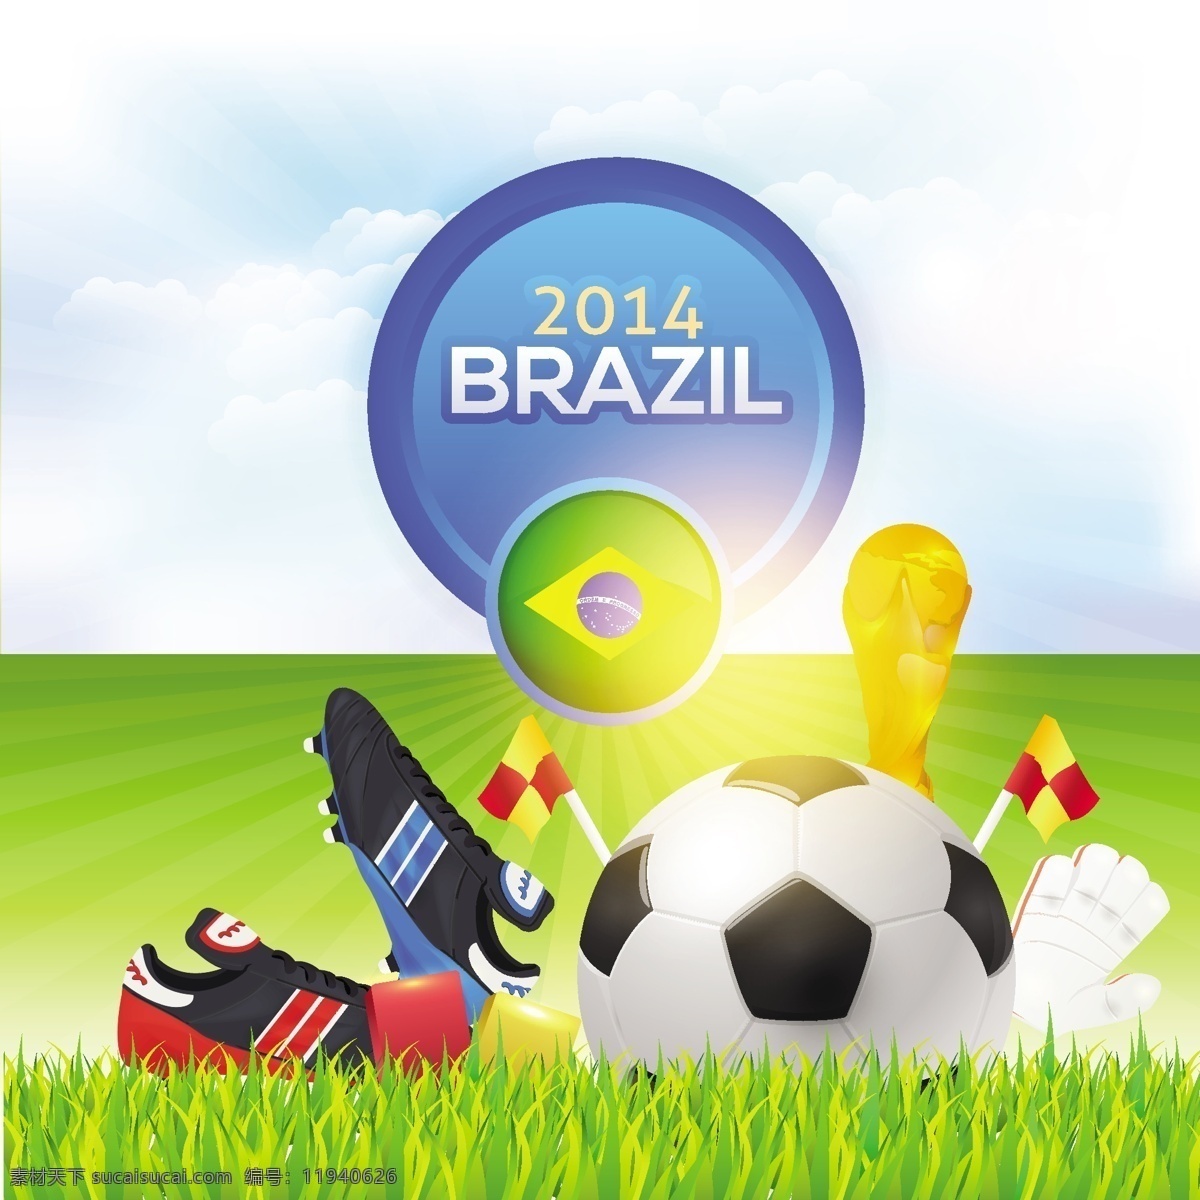 2014 世界杯 巴西世界杯 矢量 欧洲杯 体育 体育运动 宣传设计 足球 模板下载 足球世界杯 足球比赛 足球设计 足球鞋 体育设计 足球运动 体育比赛 足球广告 矢量图 日常生活